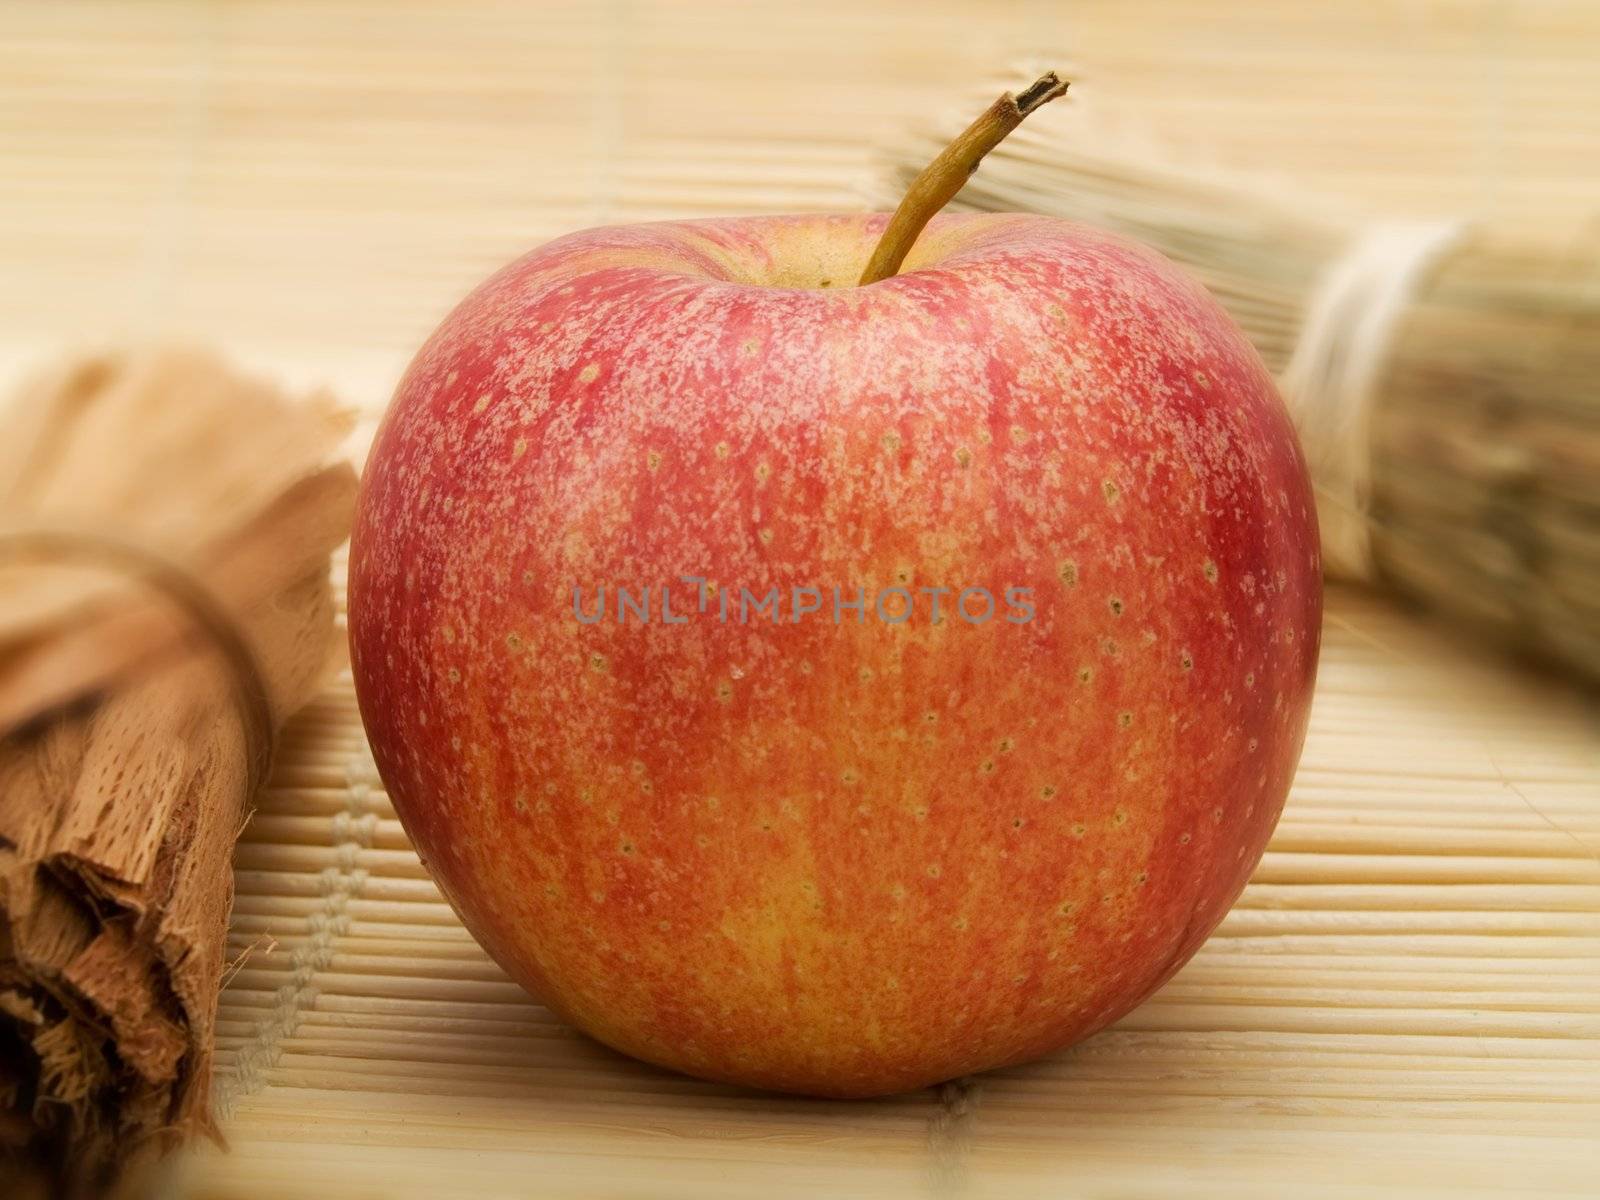 Red apple by henrischmit